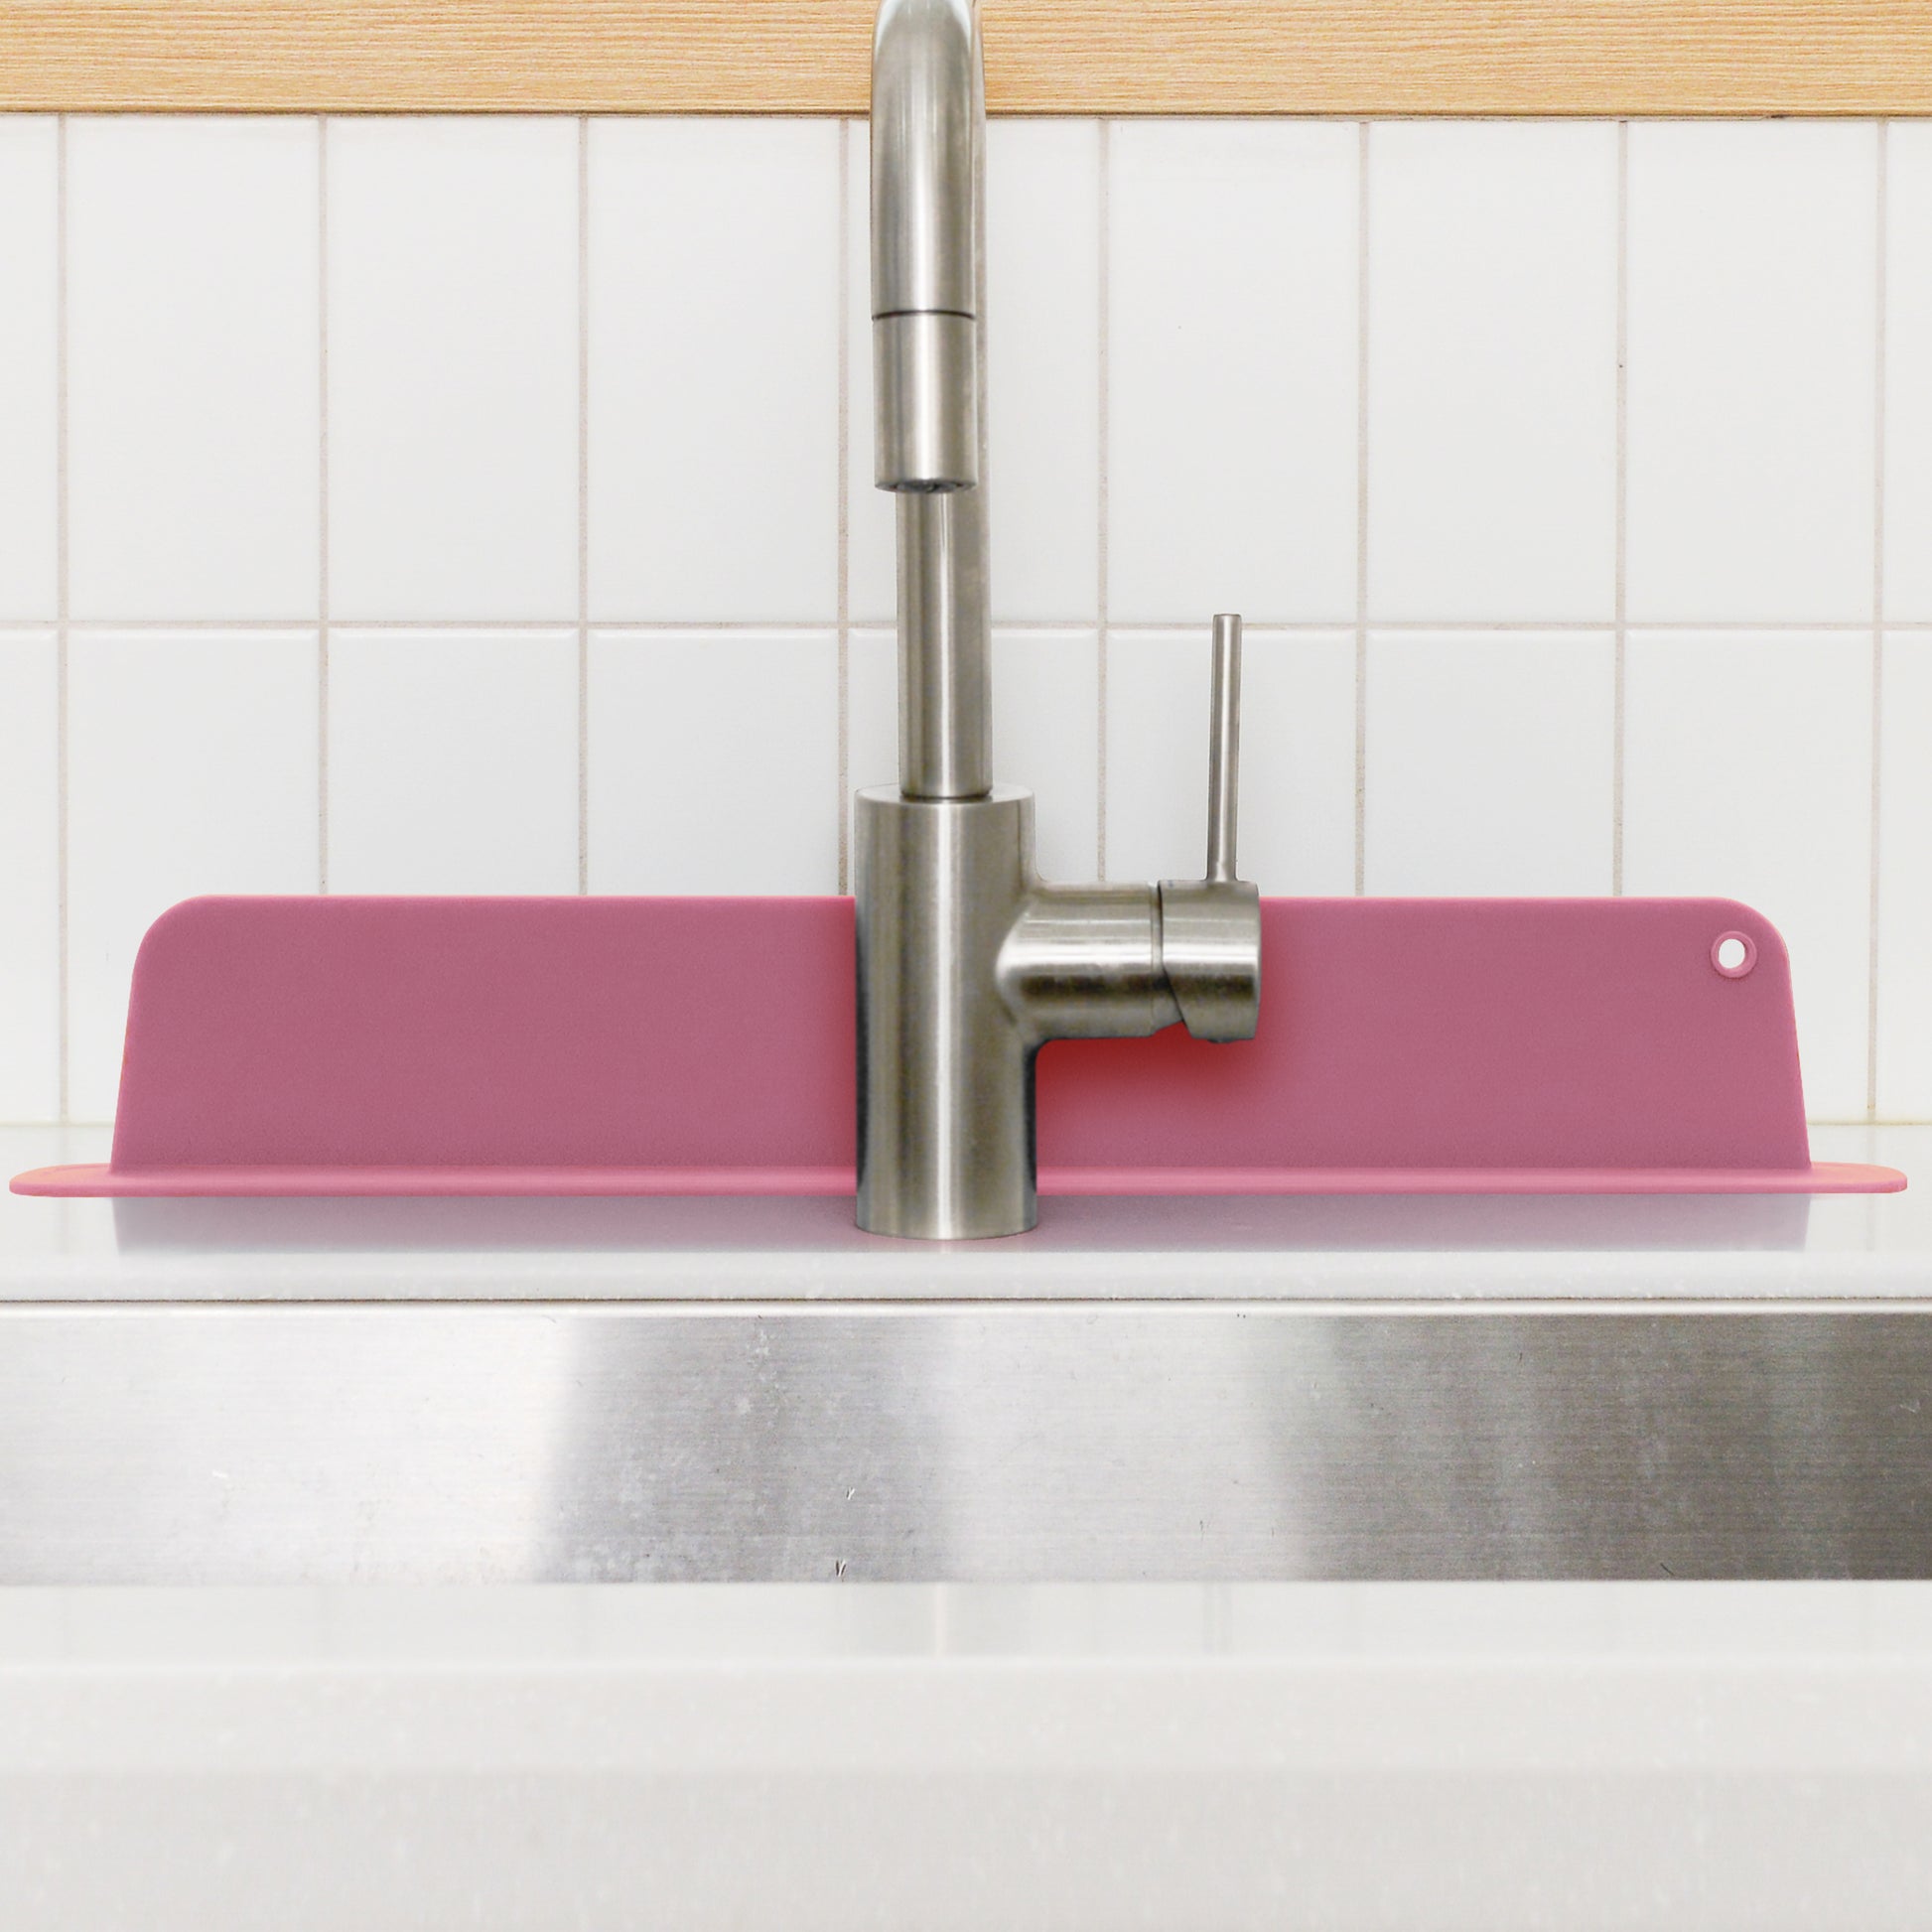 Silicone Sink Splash Guard For Kitchen